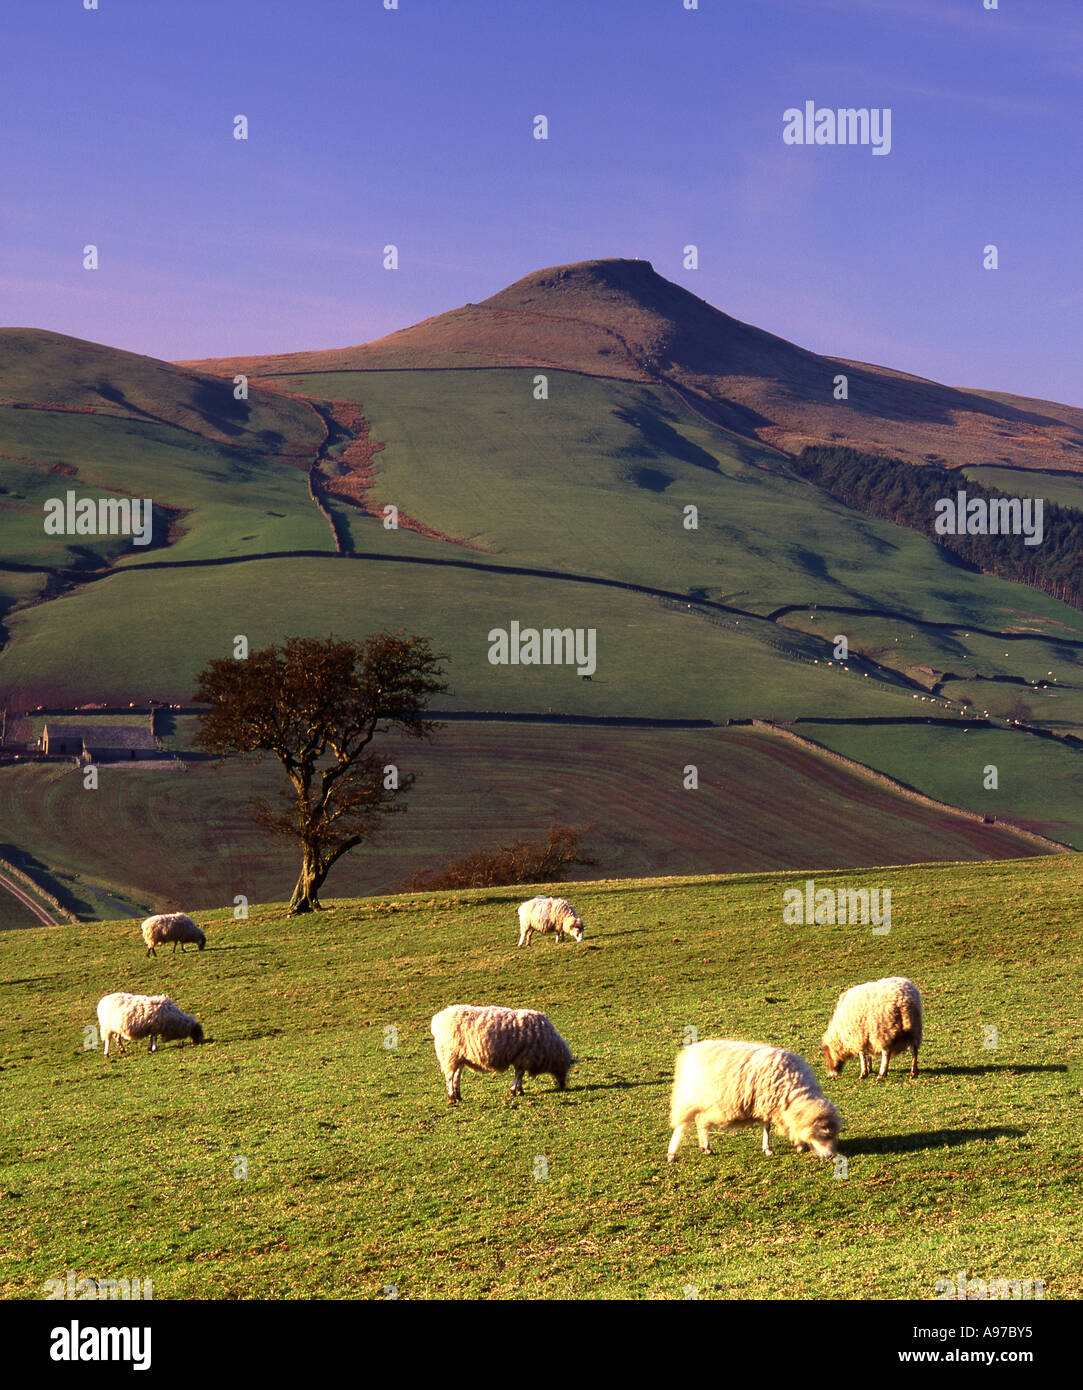 Herde von Schafen unterhalb der Gipfel Shutlingsloe, in der Nähe von Wildboarclough, Cheshire, Peak District National Park, England, Vereinigtes Königreich Stockfoto